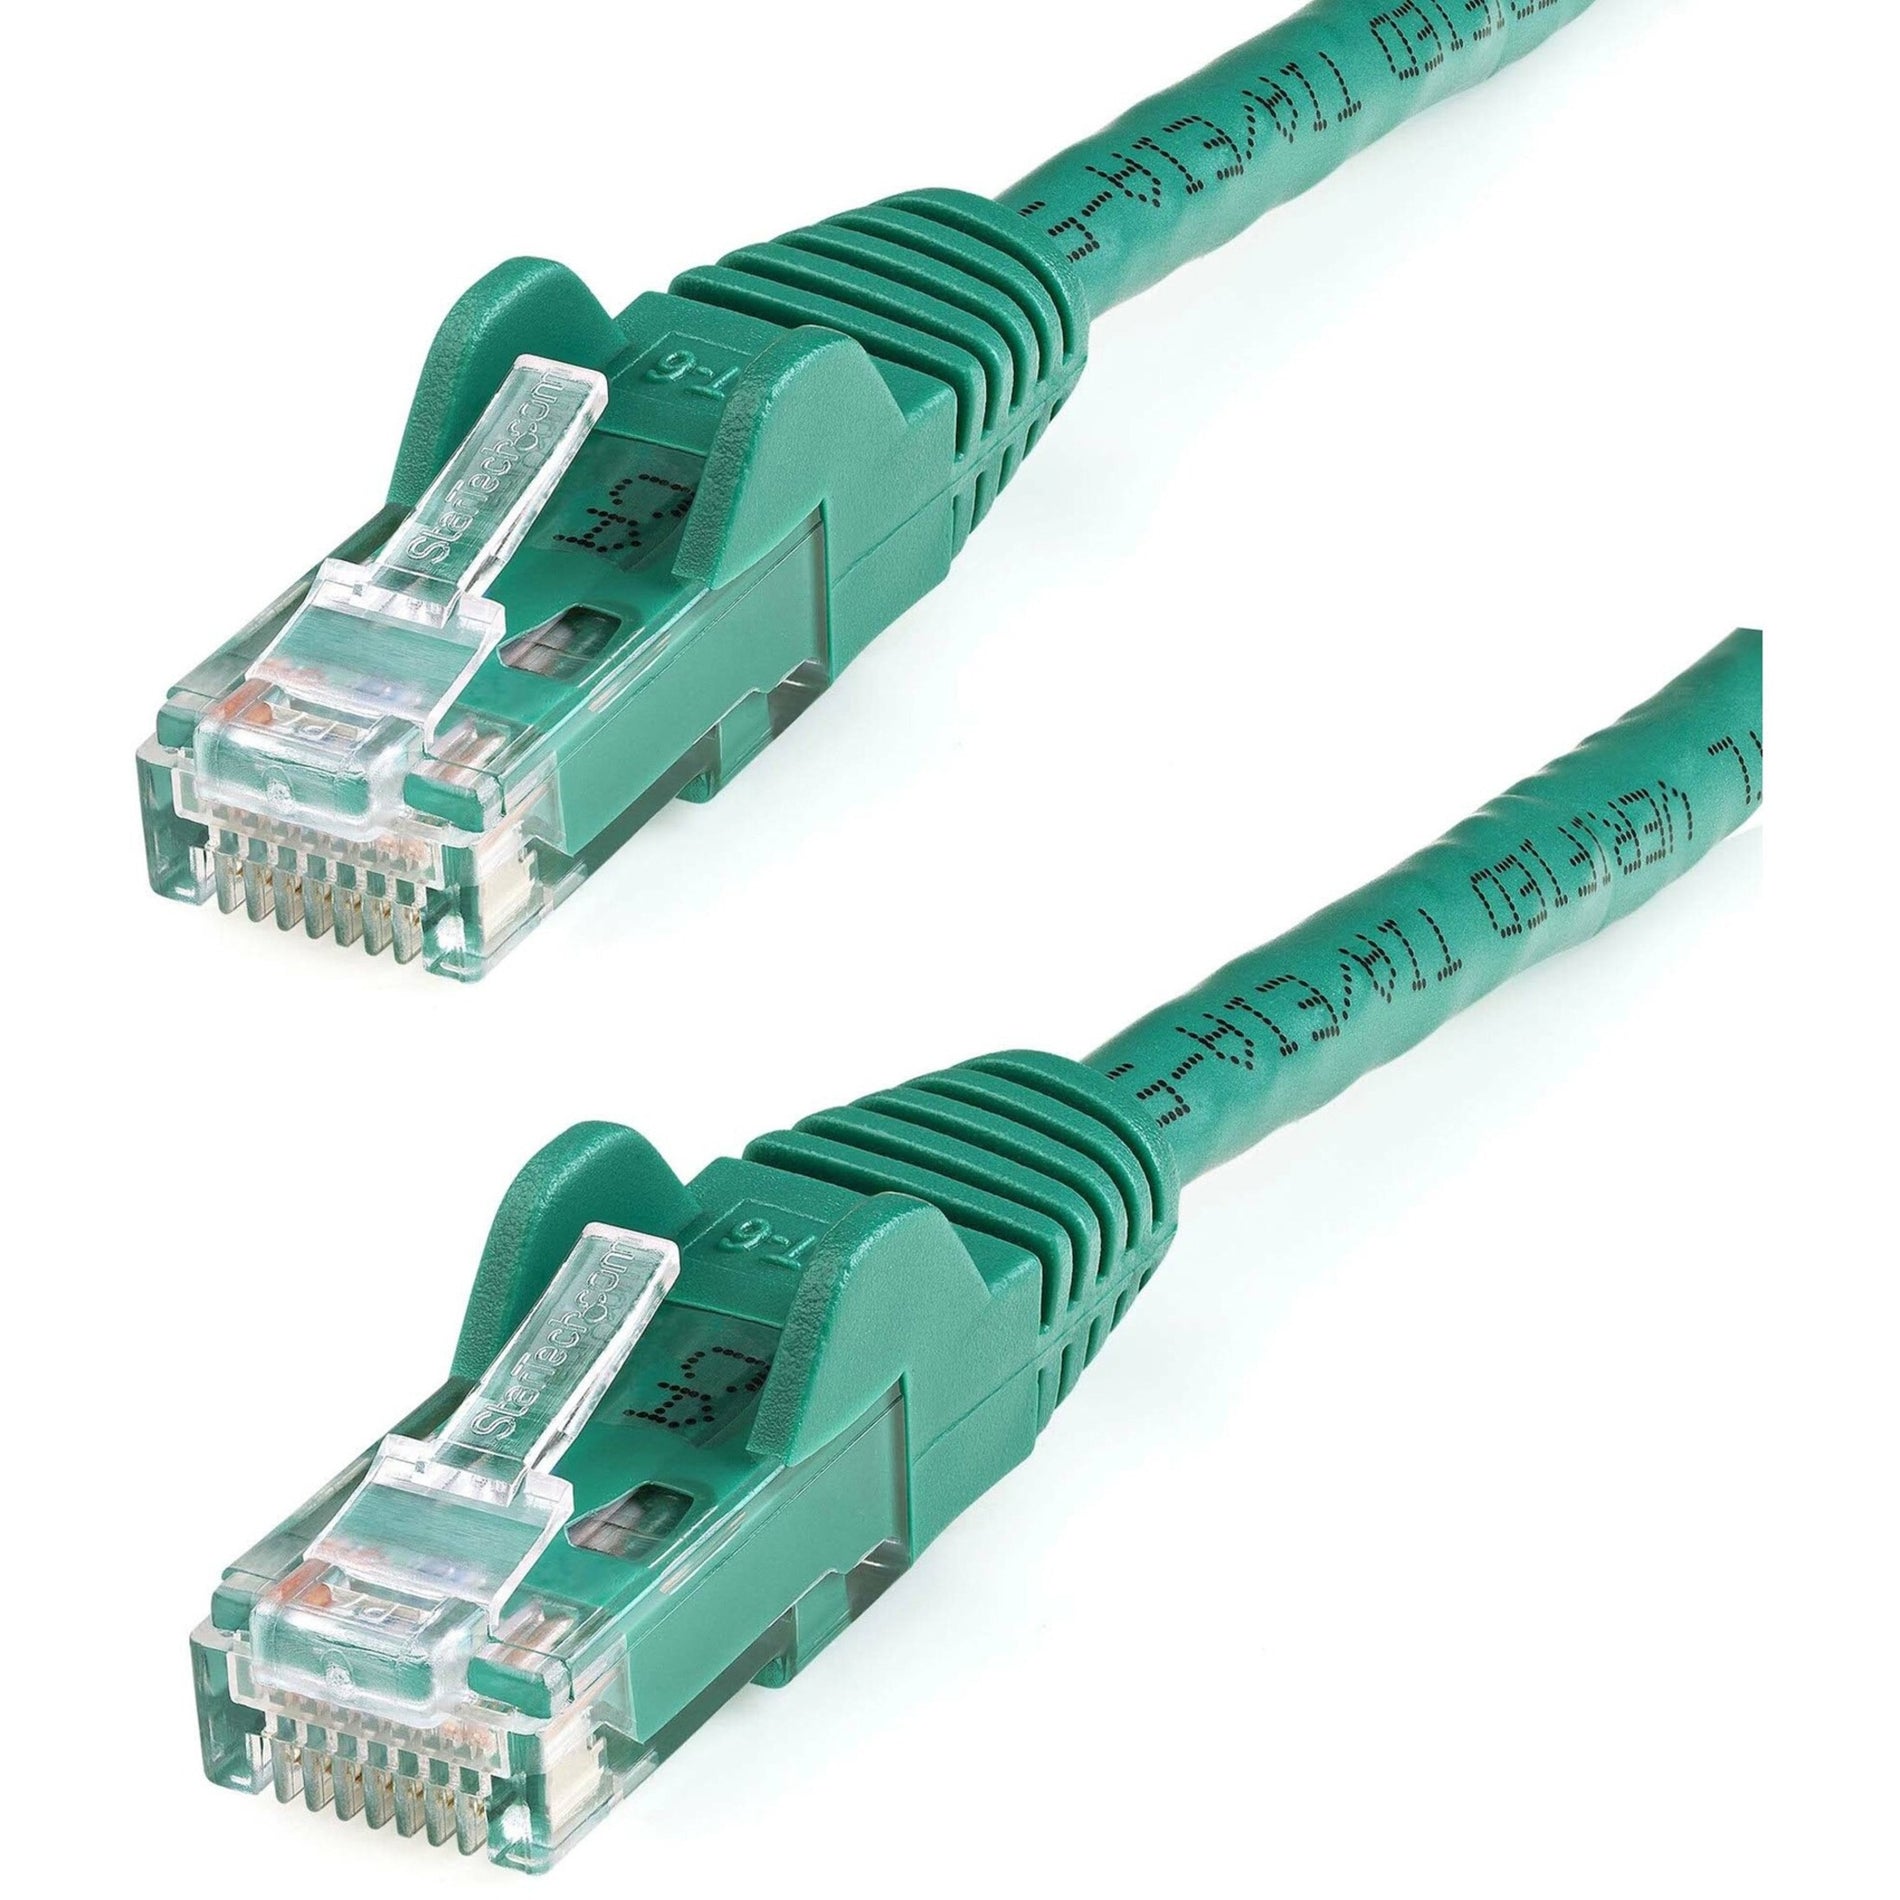 思科科技（StarTech.com） N6PATCH100GN 100 英尺 綠色 Snagless Cat6 UTP Patch 线缆，终身保修，10 吉比特/秒 数据传输速率，耐锈性